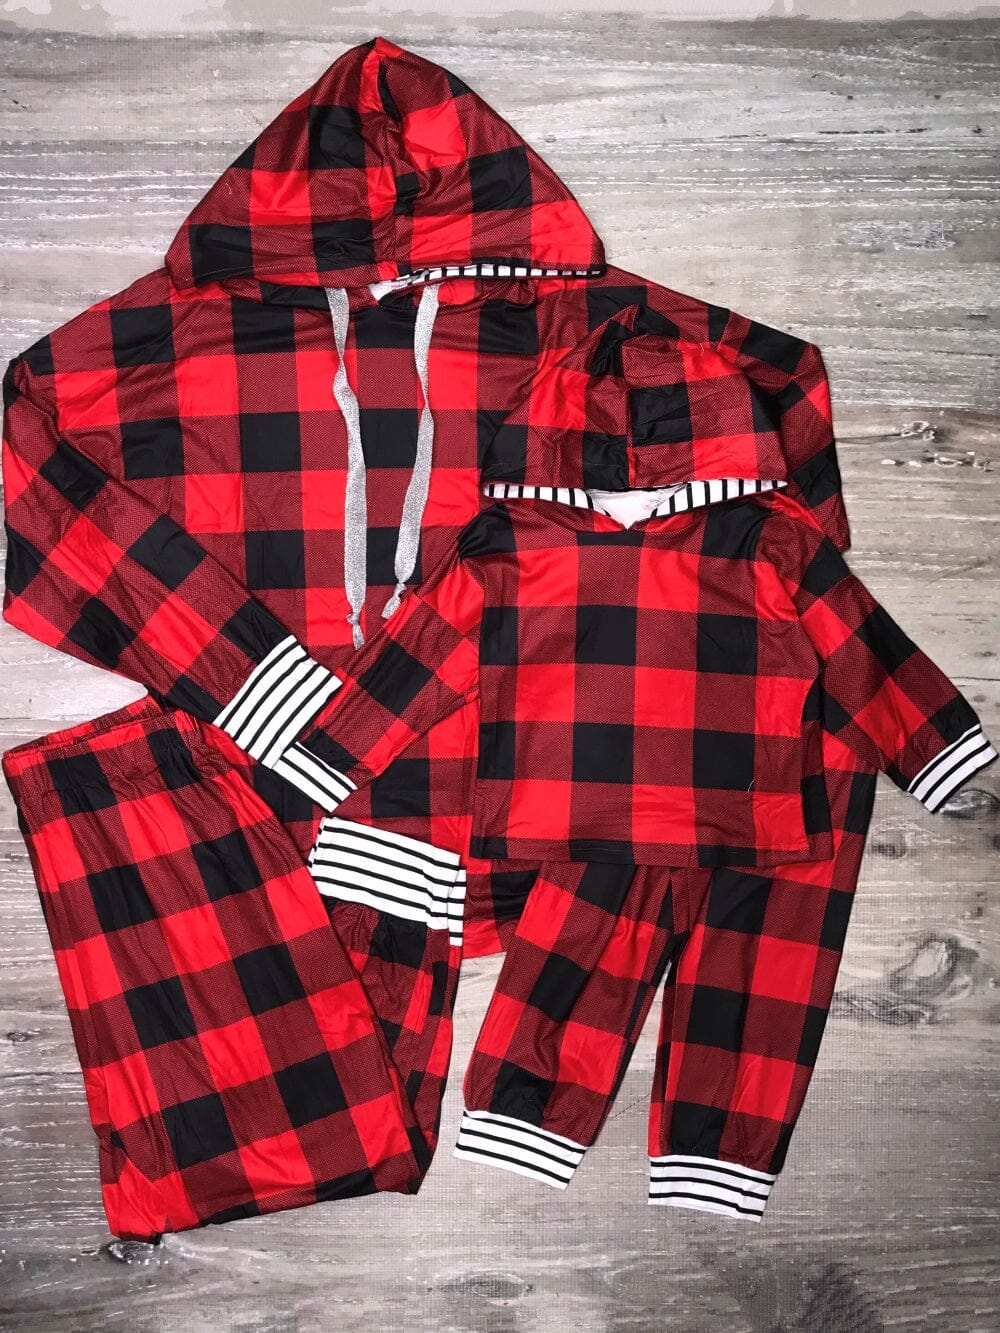 Moose Tartan Plaid Matching Family Pajamas Girl/Boy 2T